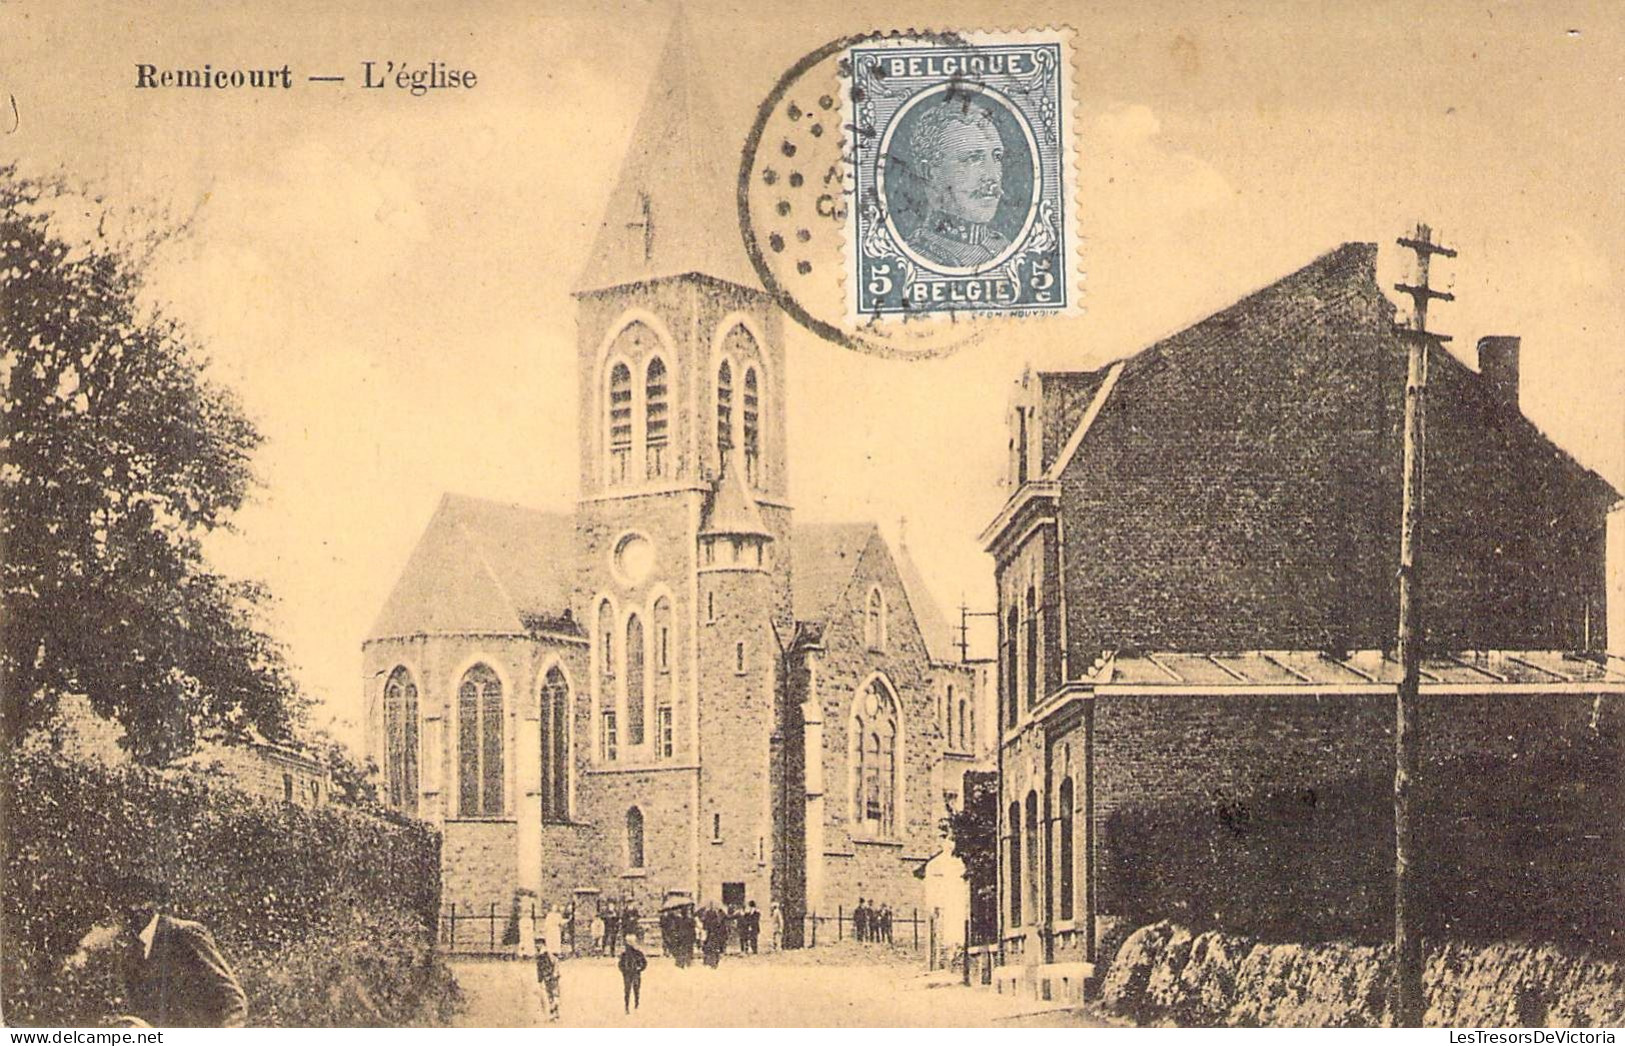 BELGIQUE - REMICOURT - L'Eglise - Edit Henri Kaquet - Carte Postale Ancienne - Remicourt